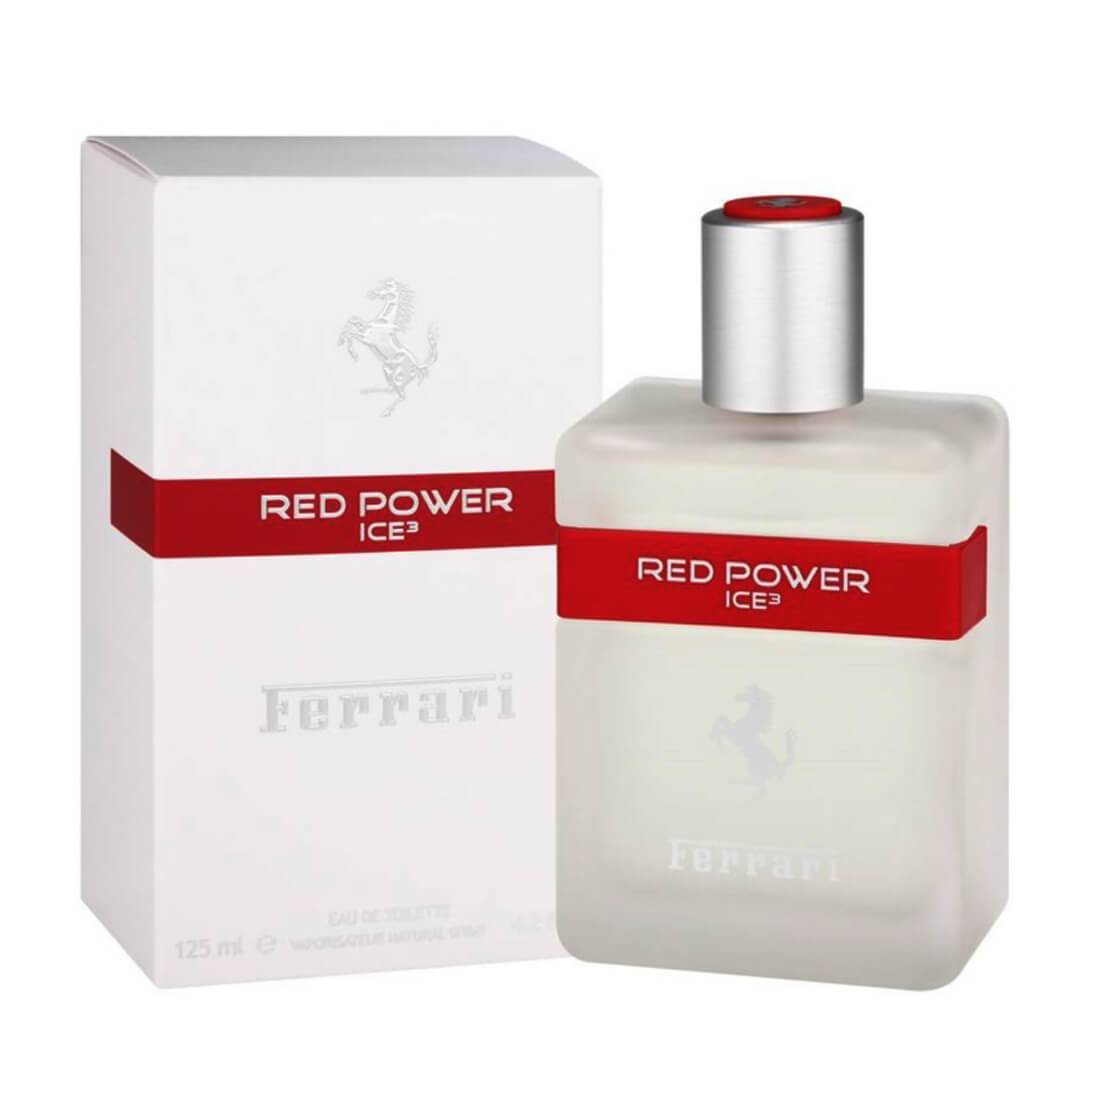 Ferrari Red Power Ice 3 Perfume For Men - 125ml